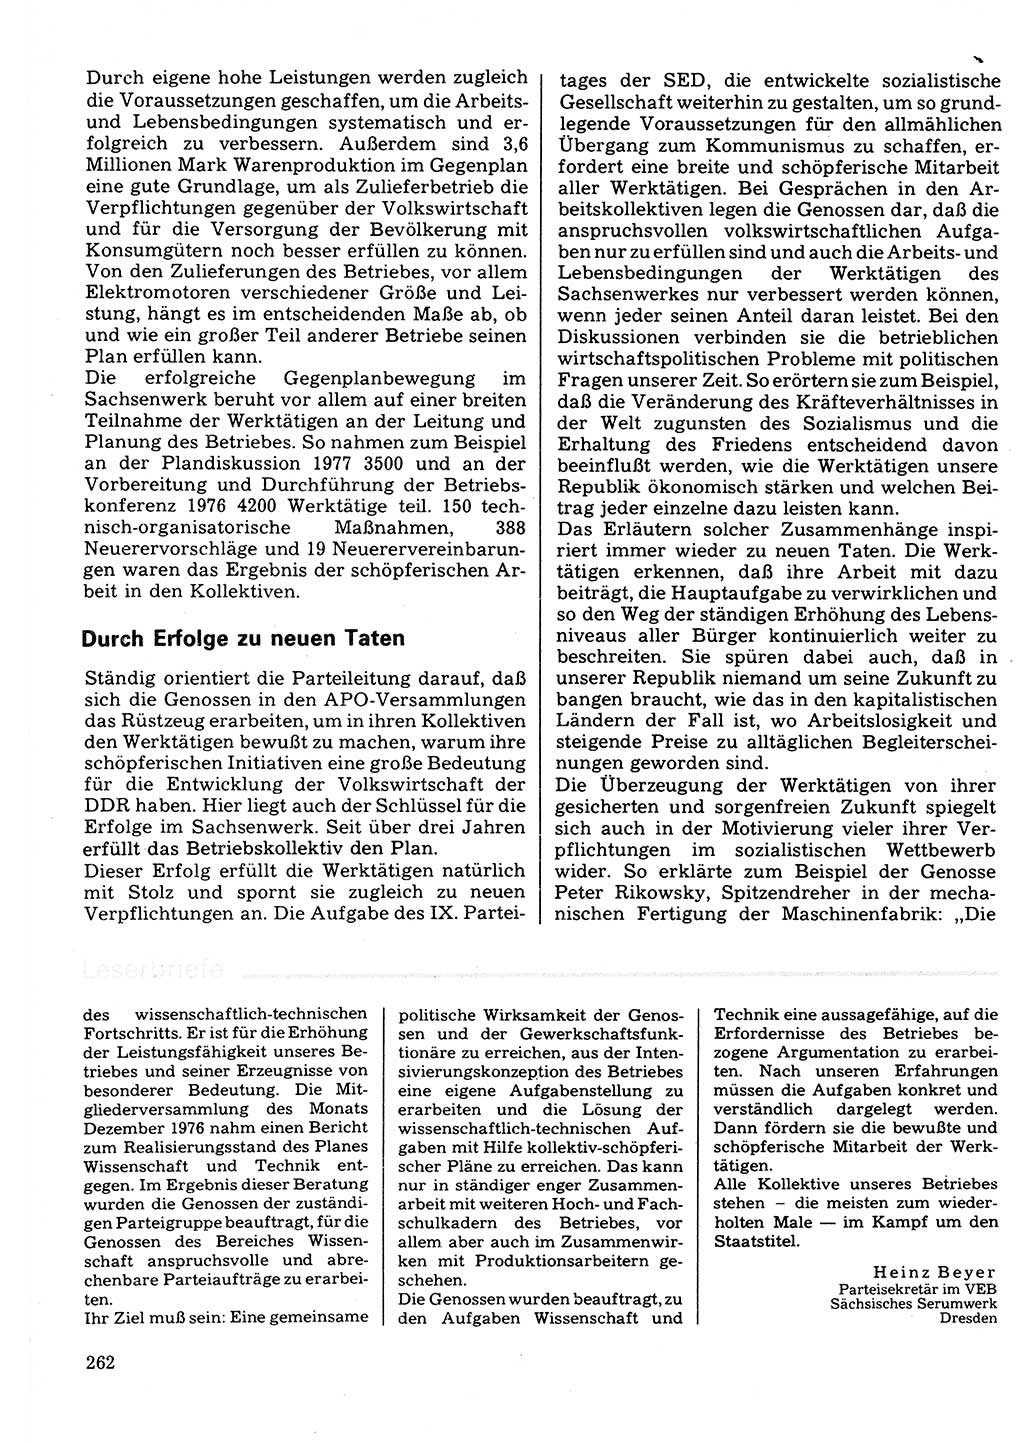 Neuer Weg (NW), Organ des Zentralkomitees (ZK) der SED (Sozialistische Einheitspartei Deutschlands) für Fragen des Parteilebens, 32. Jahrgang [Deutsche Demokratische Republik (DDR)] 1977, Seite 262 (NW ZK SED DDR 1977, S. 262)